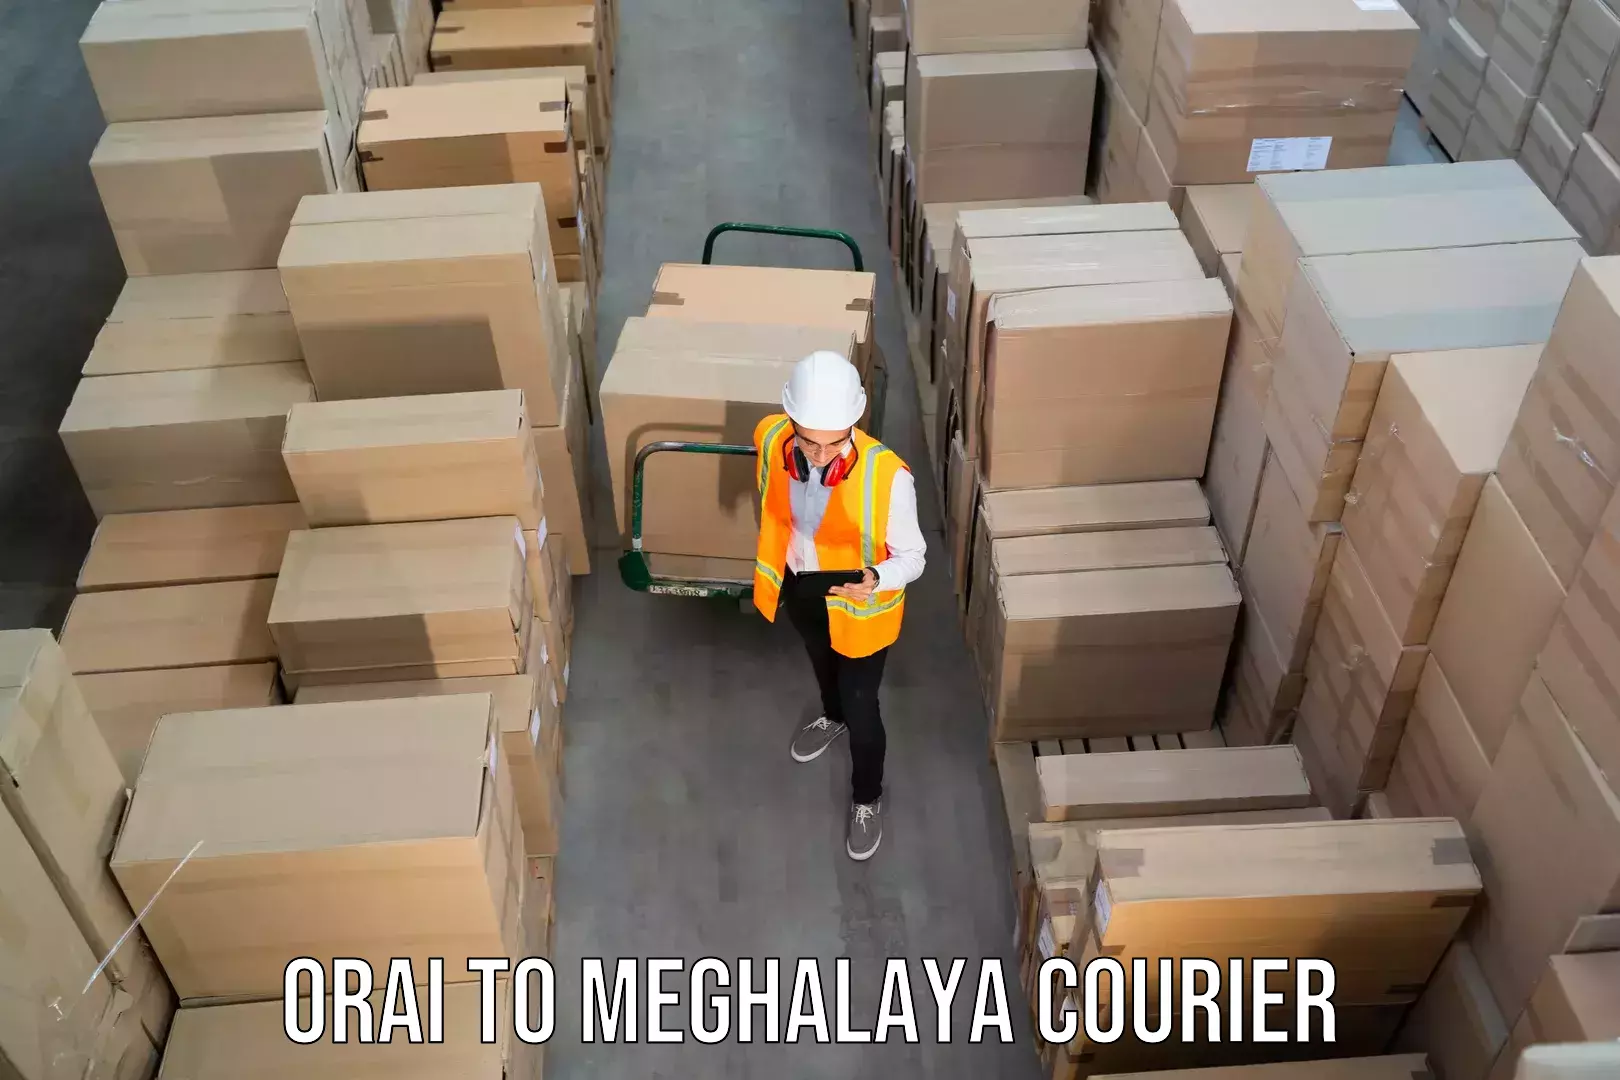 Premium courier services Orai to Shillong